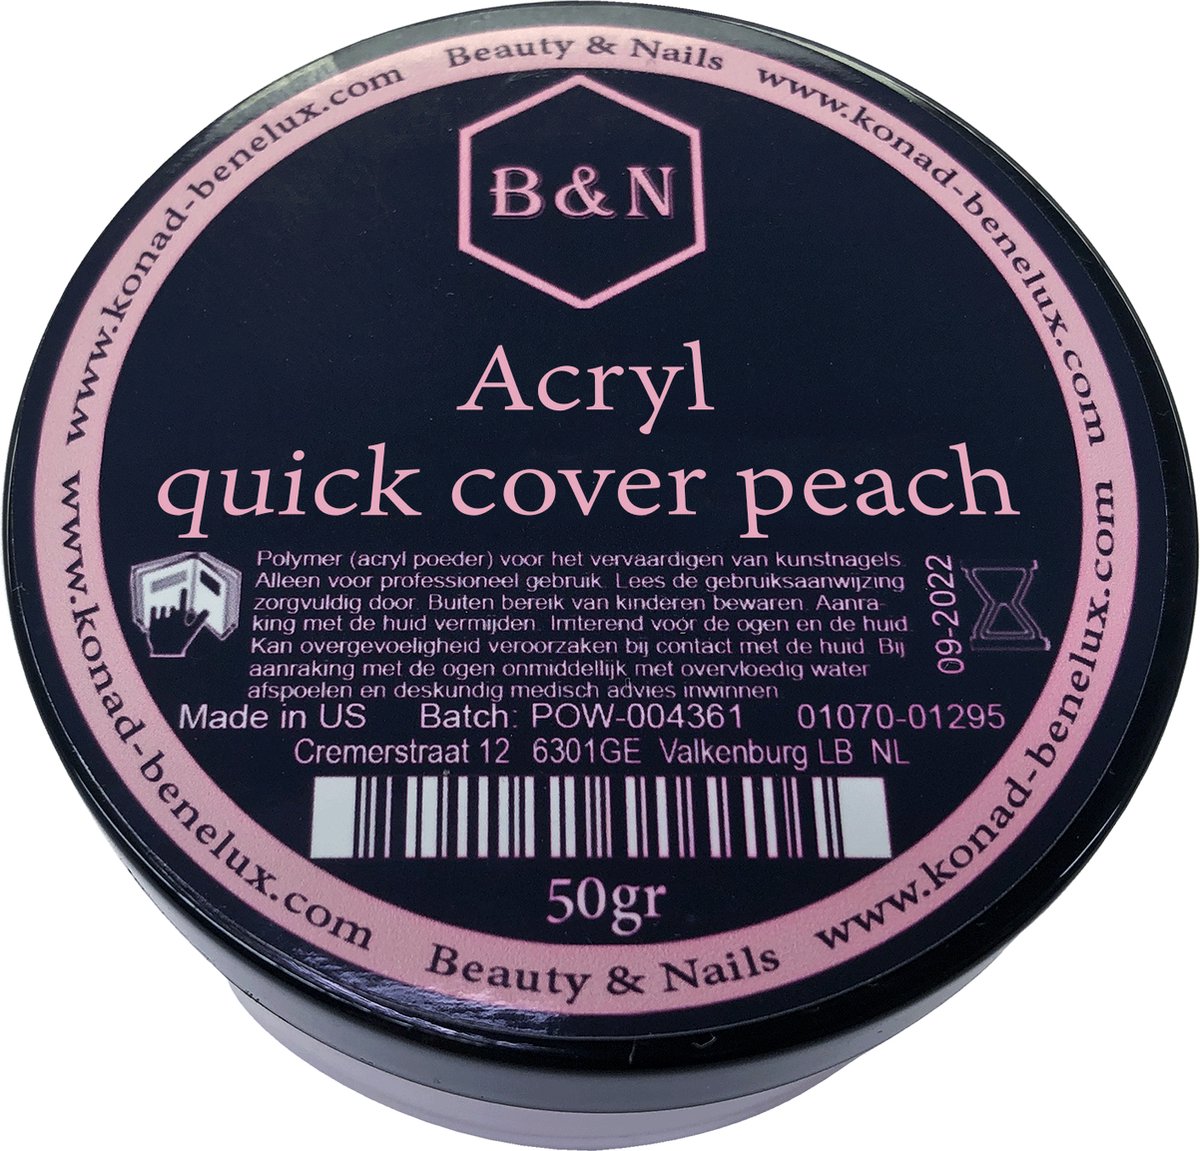 Acryl - quick cover peach - 50 gr | B&N - acrylpoeder - VEGAN - acrylpoeder